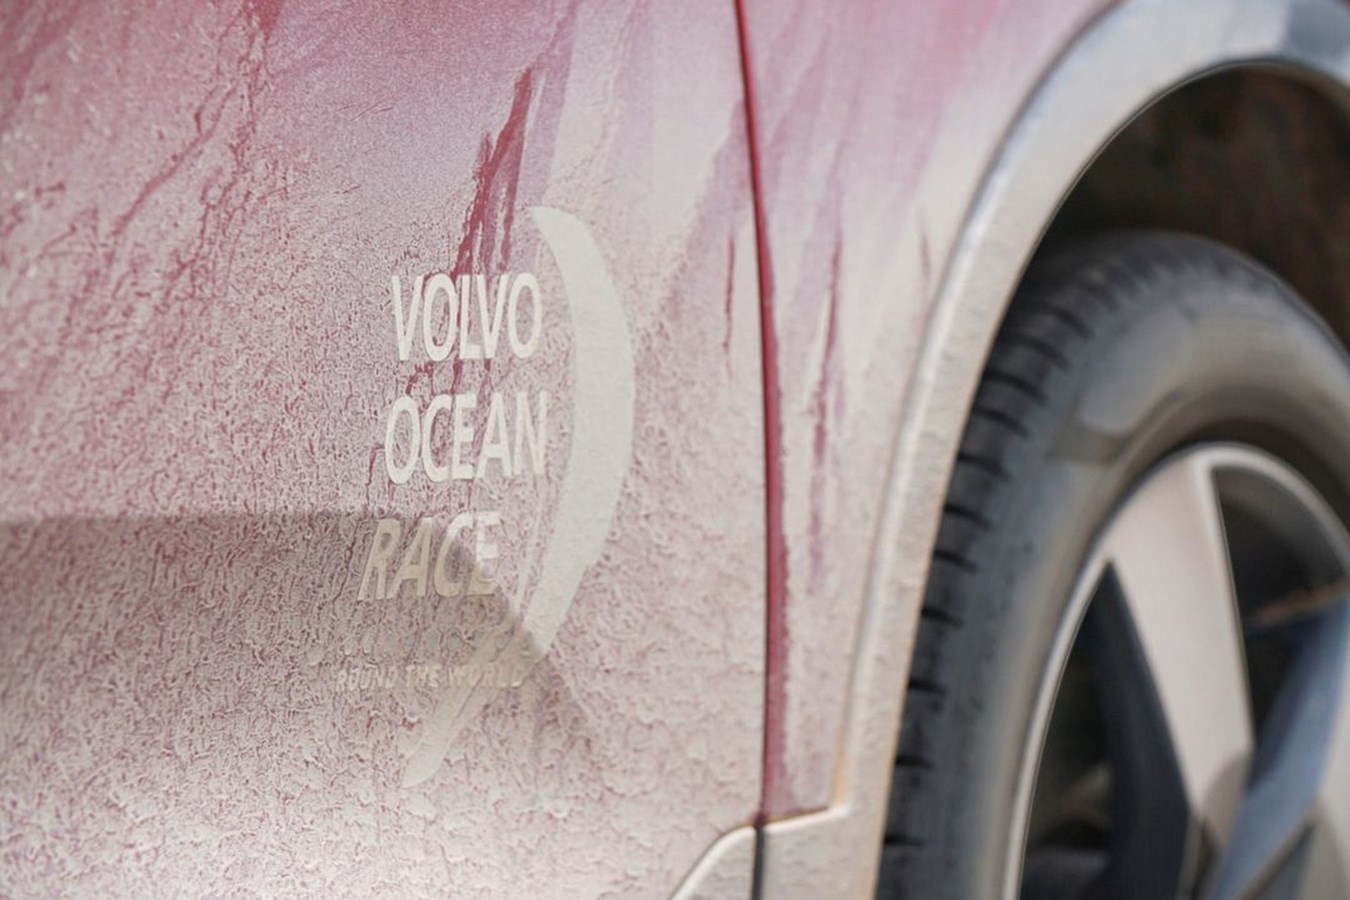 Cacá Clauset 2018 Volvo Ocean Race